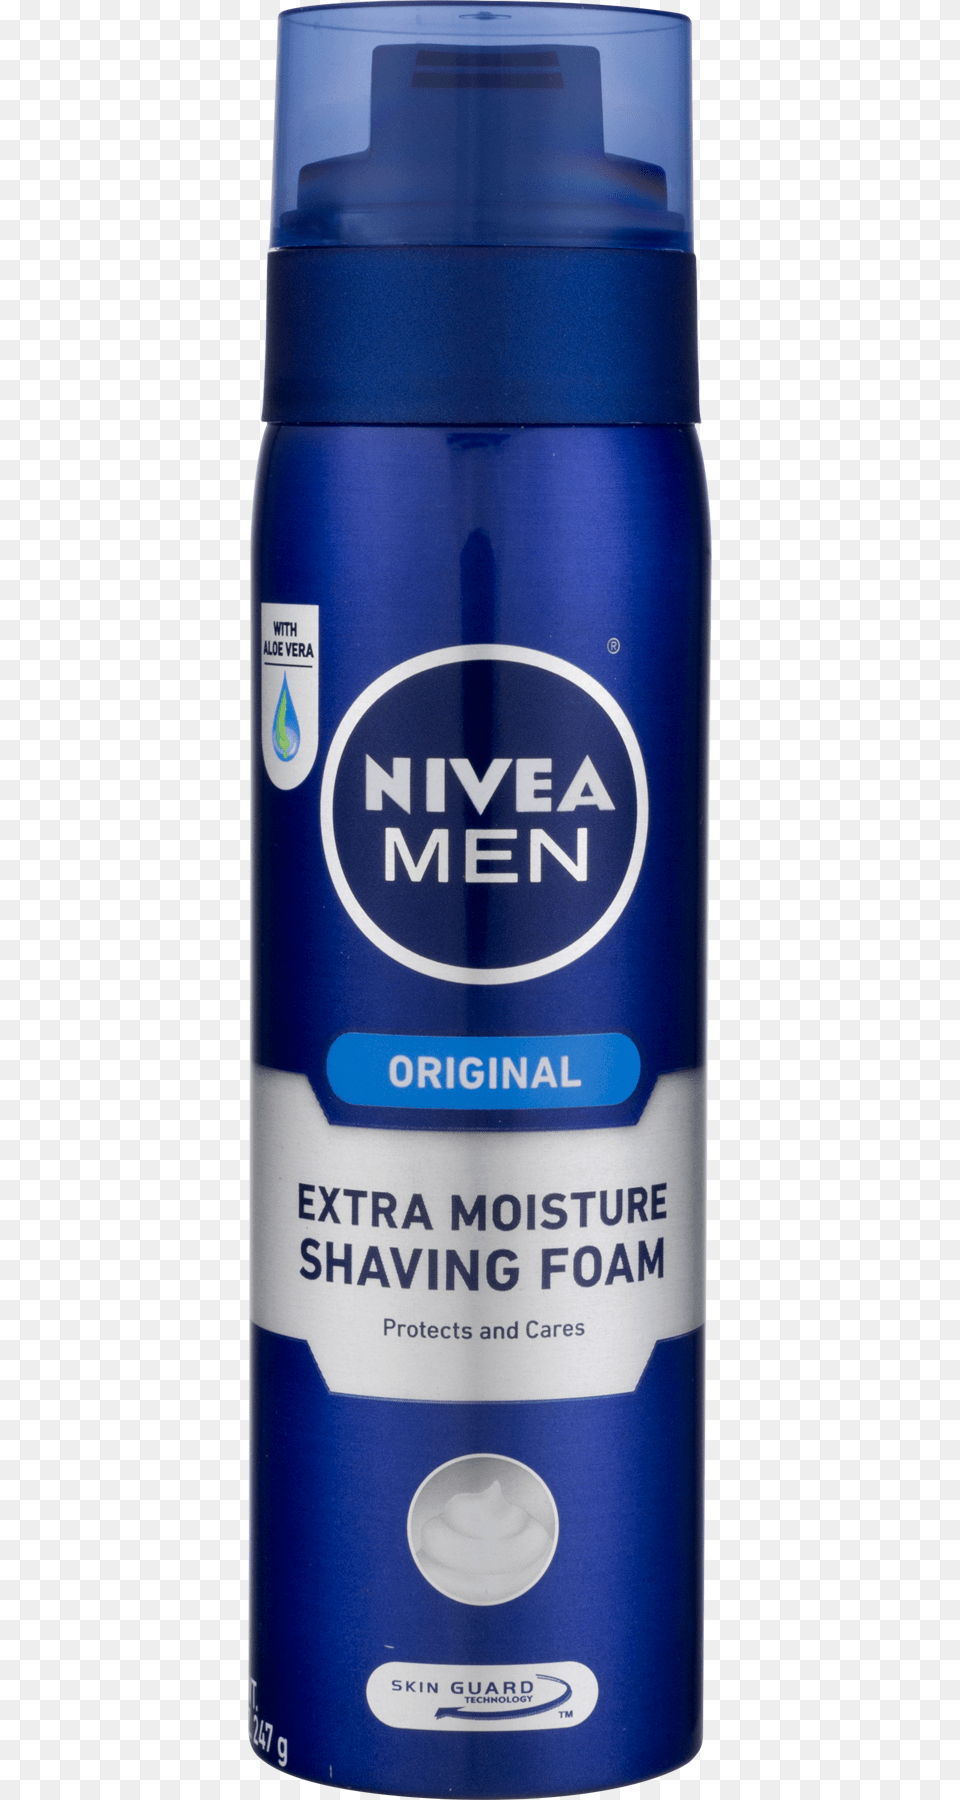 Nivea Men Original Shaving Foam, Cosmetics, Deodorant, Can, Tin Png